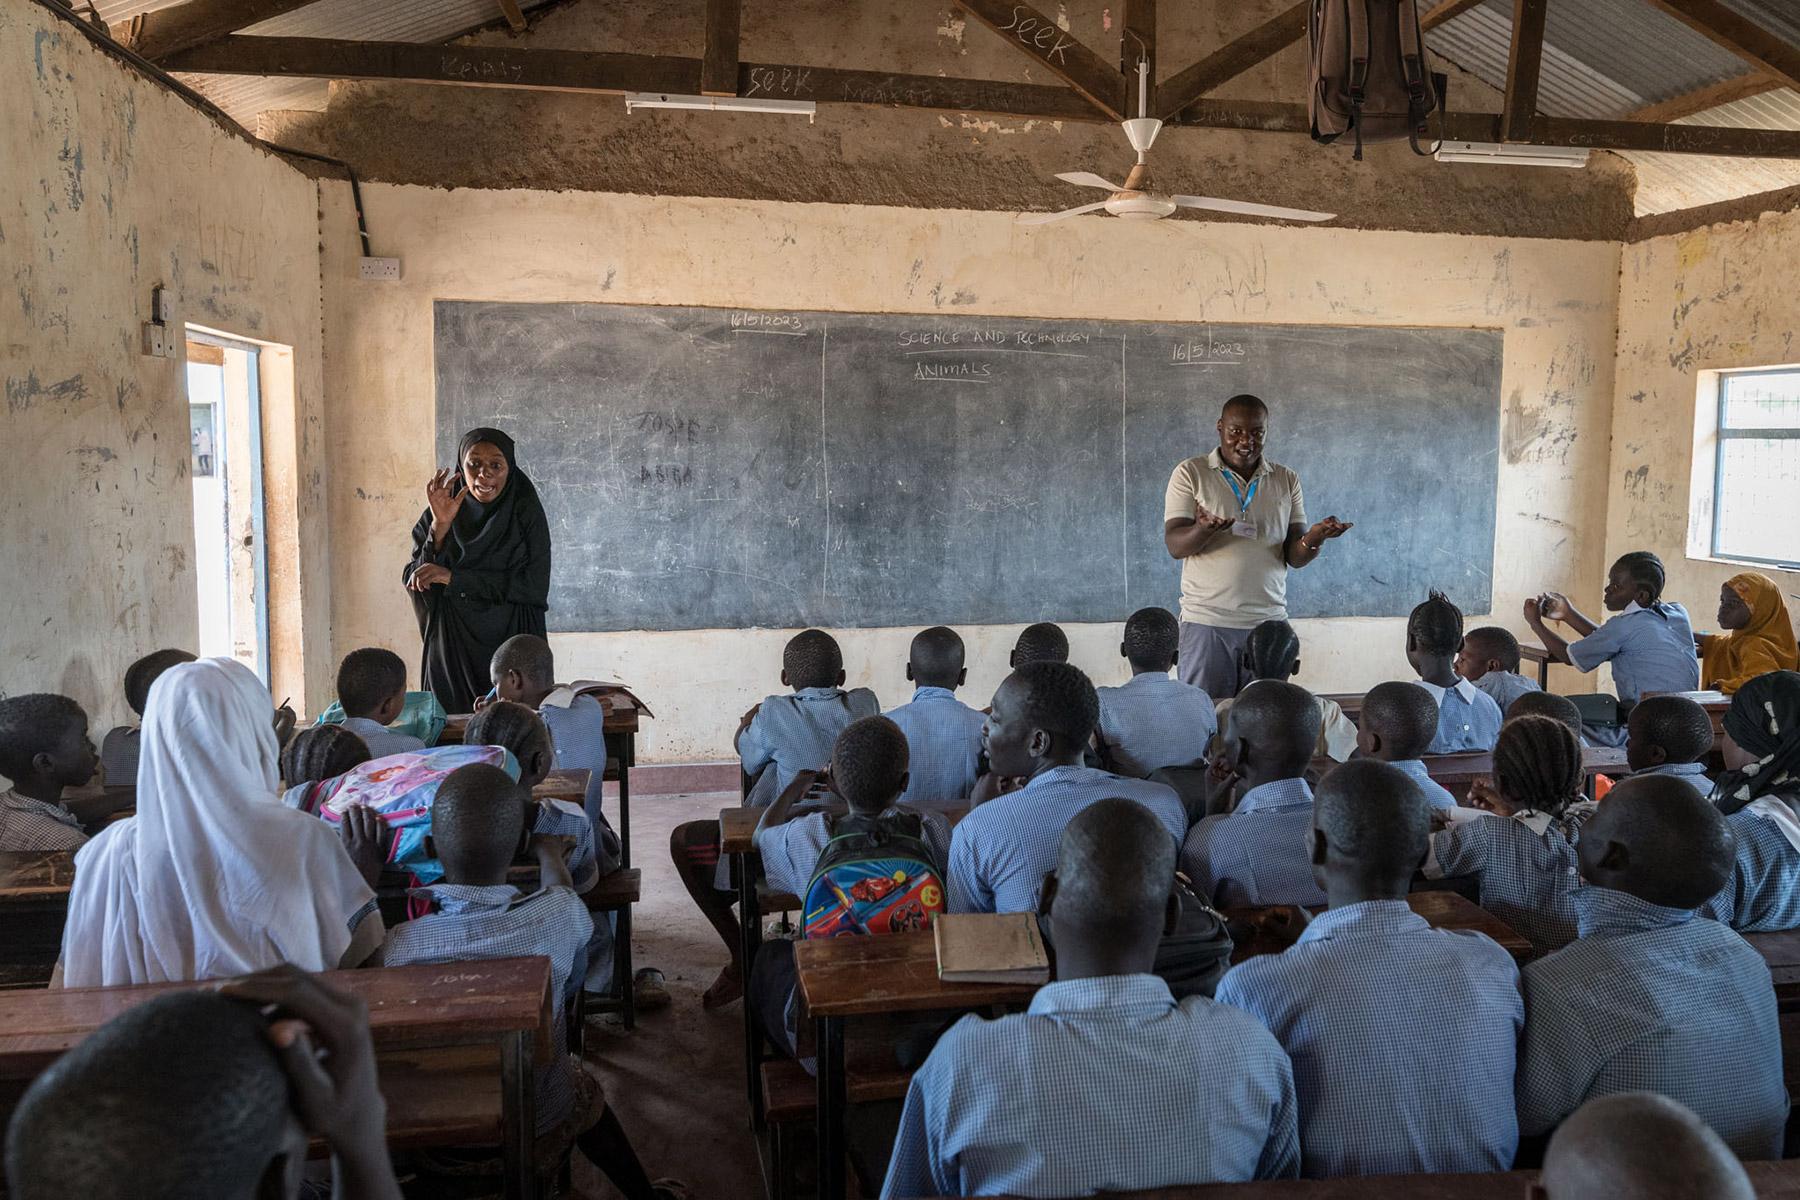 La clase está en marcha en la Escuela Primaria Shabele, impartida por el maestro Rogers Juma (derecha) y con interpretación en lenguaje de señas impartida por la Asistente de Apoyo al Aprendizaje Amiza Lumumba (izquierda). Fotografía: FLM/ Albin Hillert